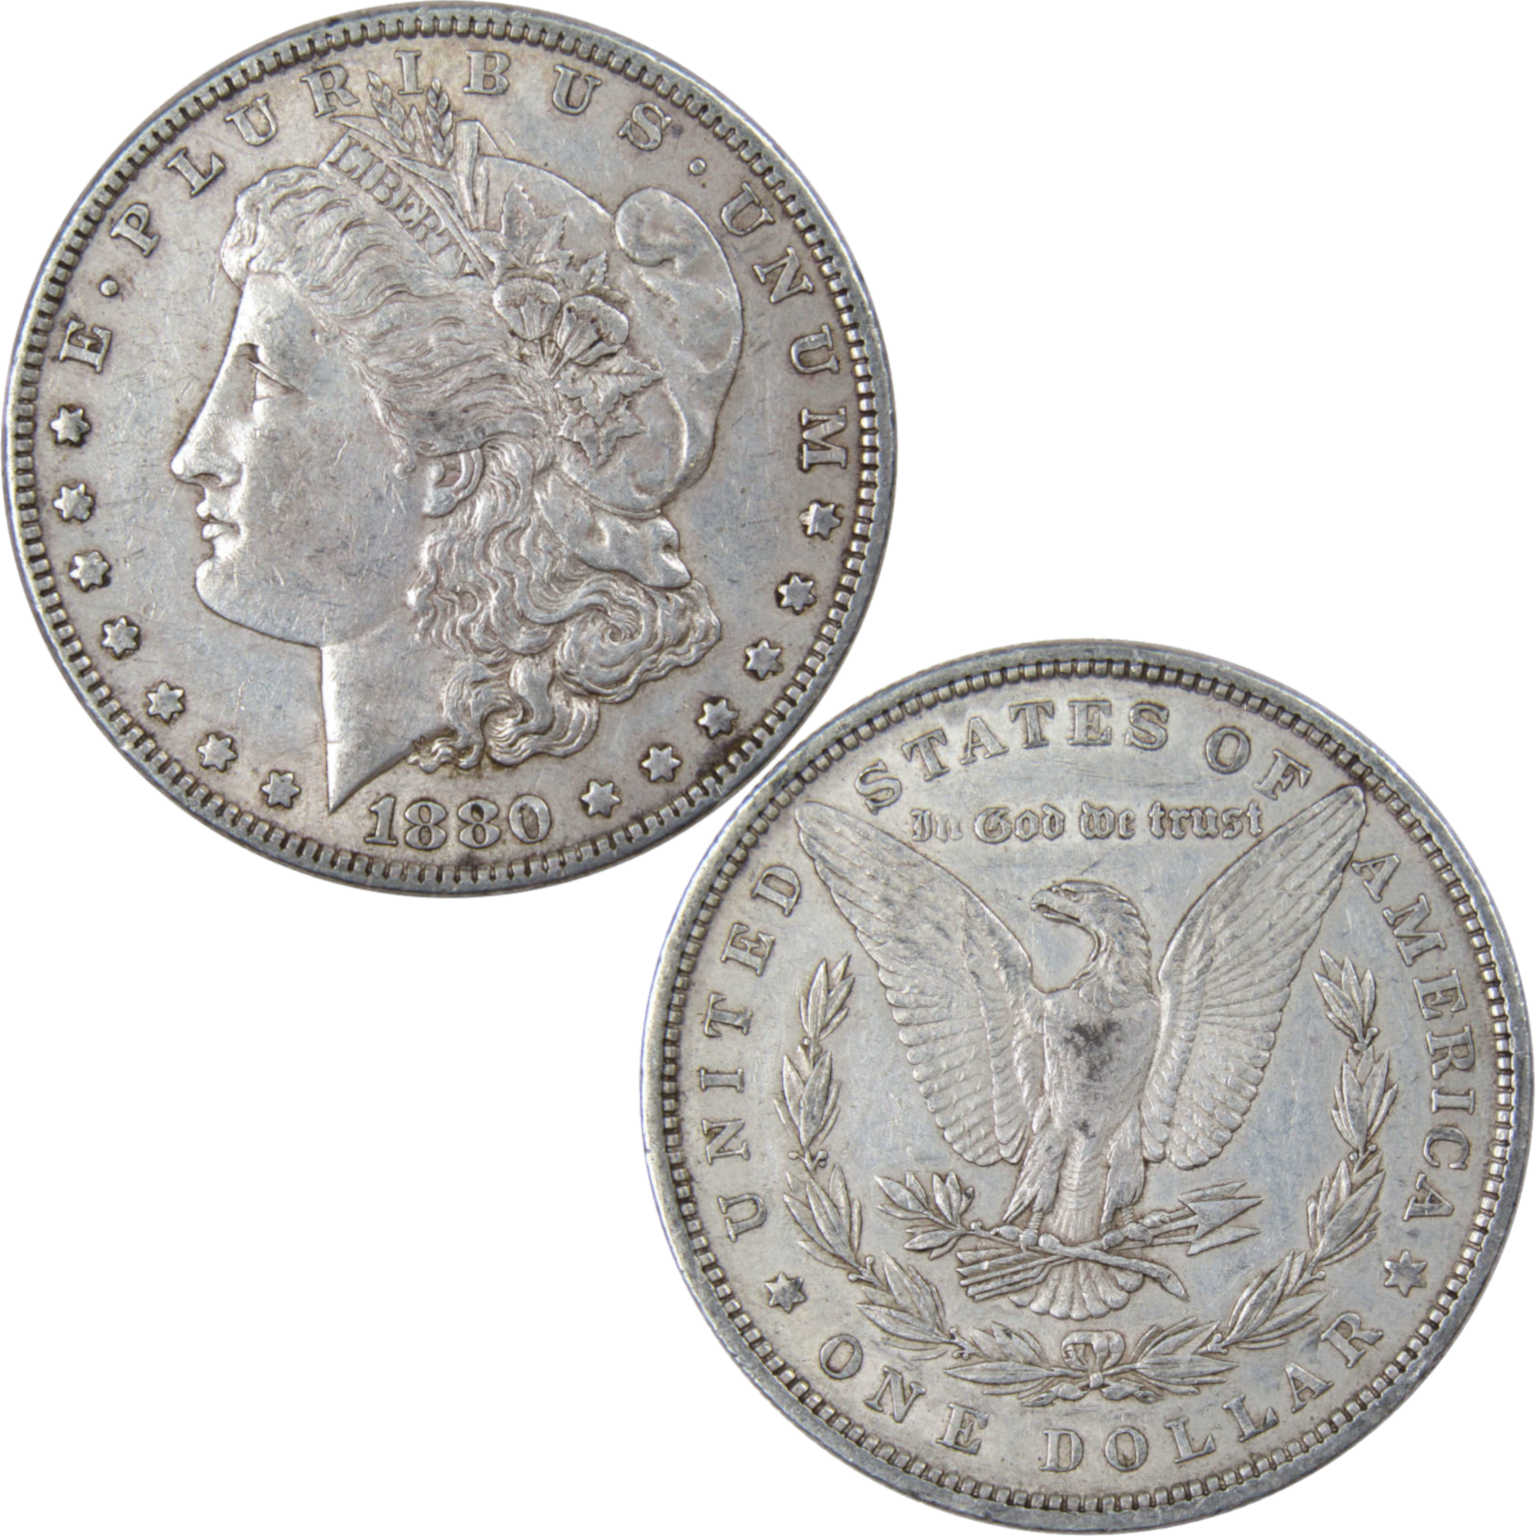 1880 Morgan Dollar XF EF Extremely Fine 90% Silver $1 US Coin Collectible - Morgan coin - Morgan silver dollar - Morgan silver dollar for sale - Profile Coins &amp; Collectibles